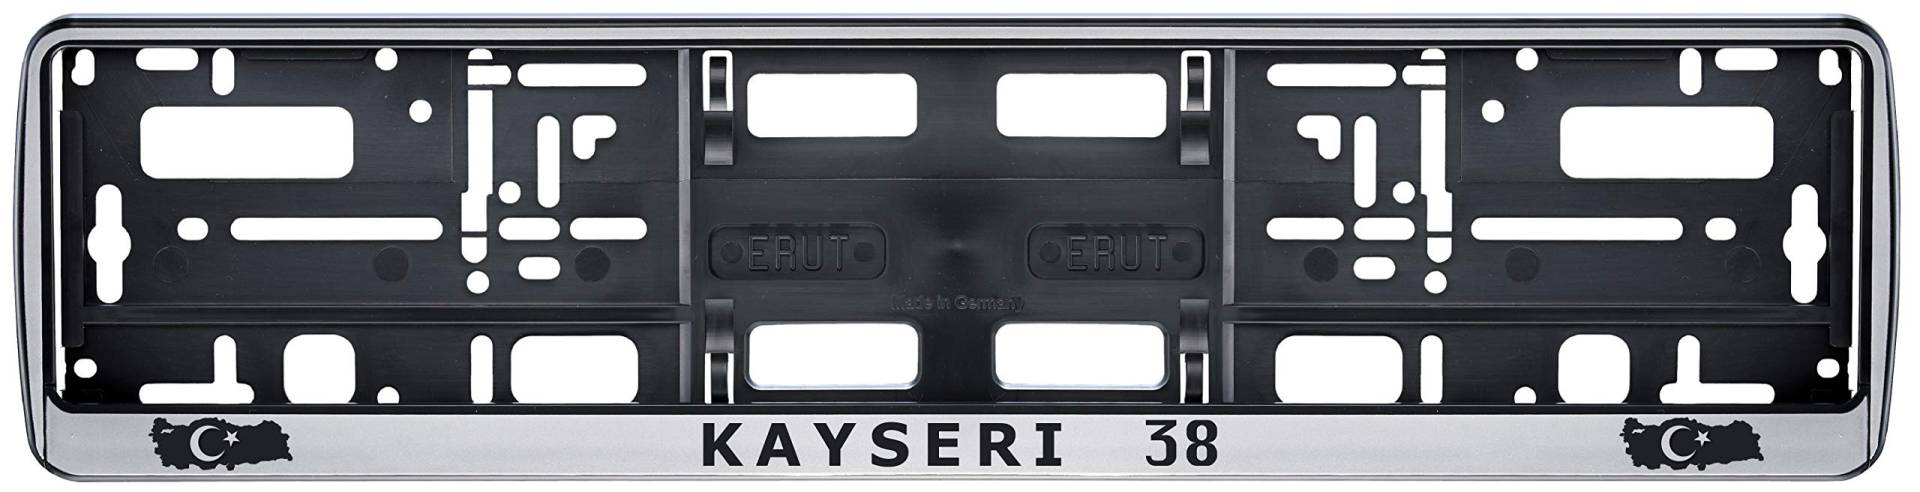 Auto Kennzeichenhalter in der Farbe Silber/Schwarz Nummernschildhalterung Auto, Nummernschildhalter Türkei Flagge 38 Kayseri 2 Stück von aina